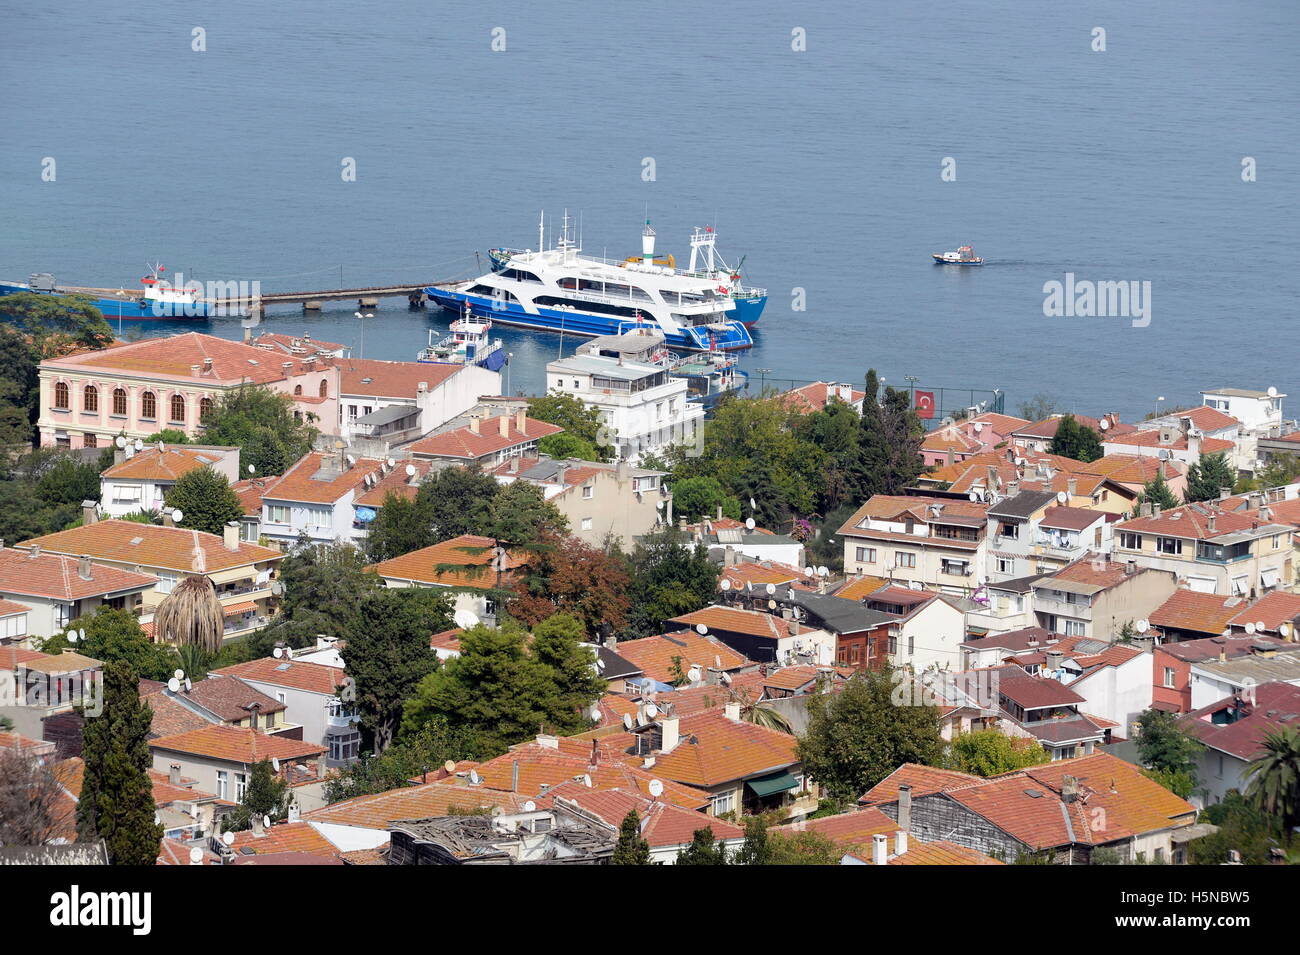 Heybeliada, Turquie. Heybeliada est la deuxième plus grande des îles Princes dans la mer de Marmara. Vue sur le port de Heybeliada Banque D'Images